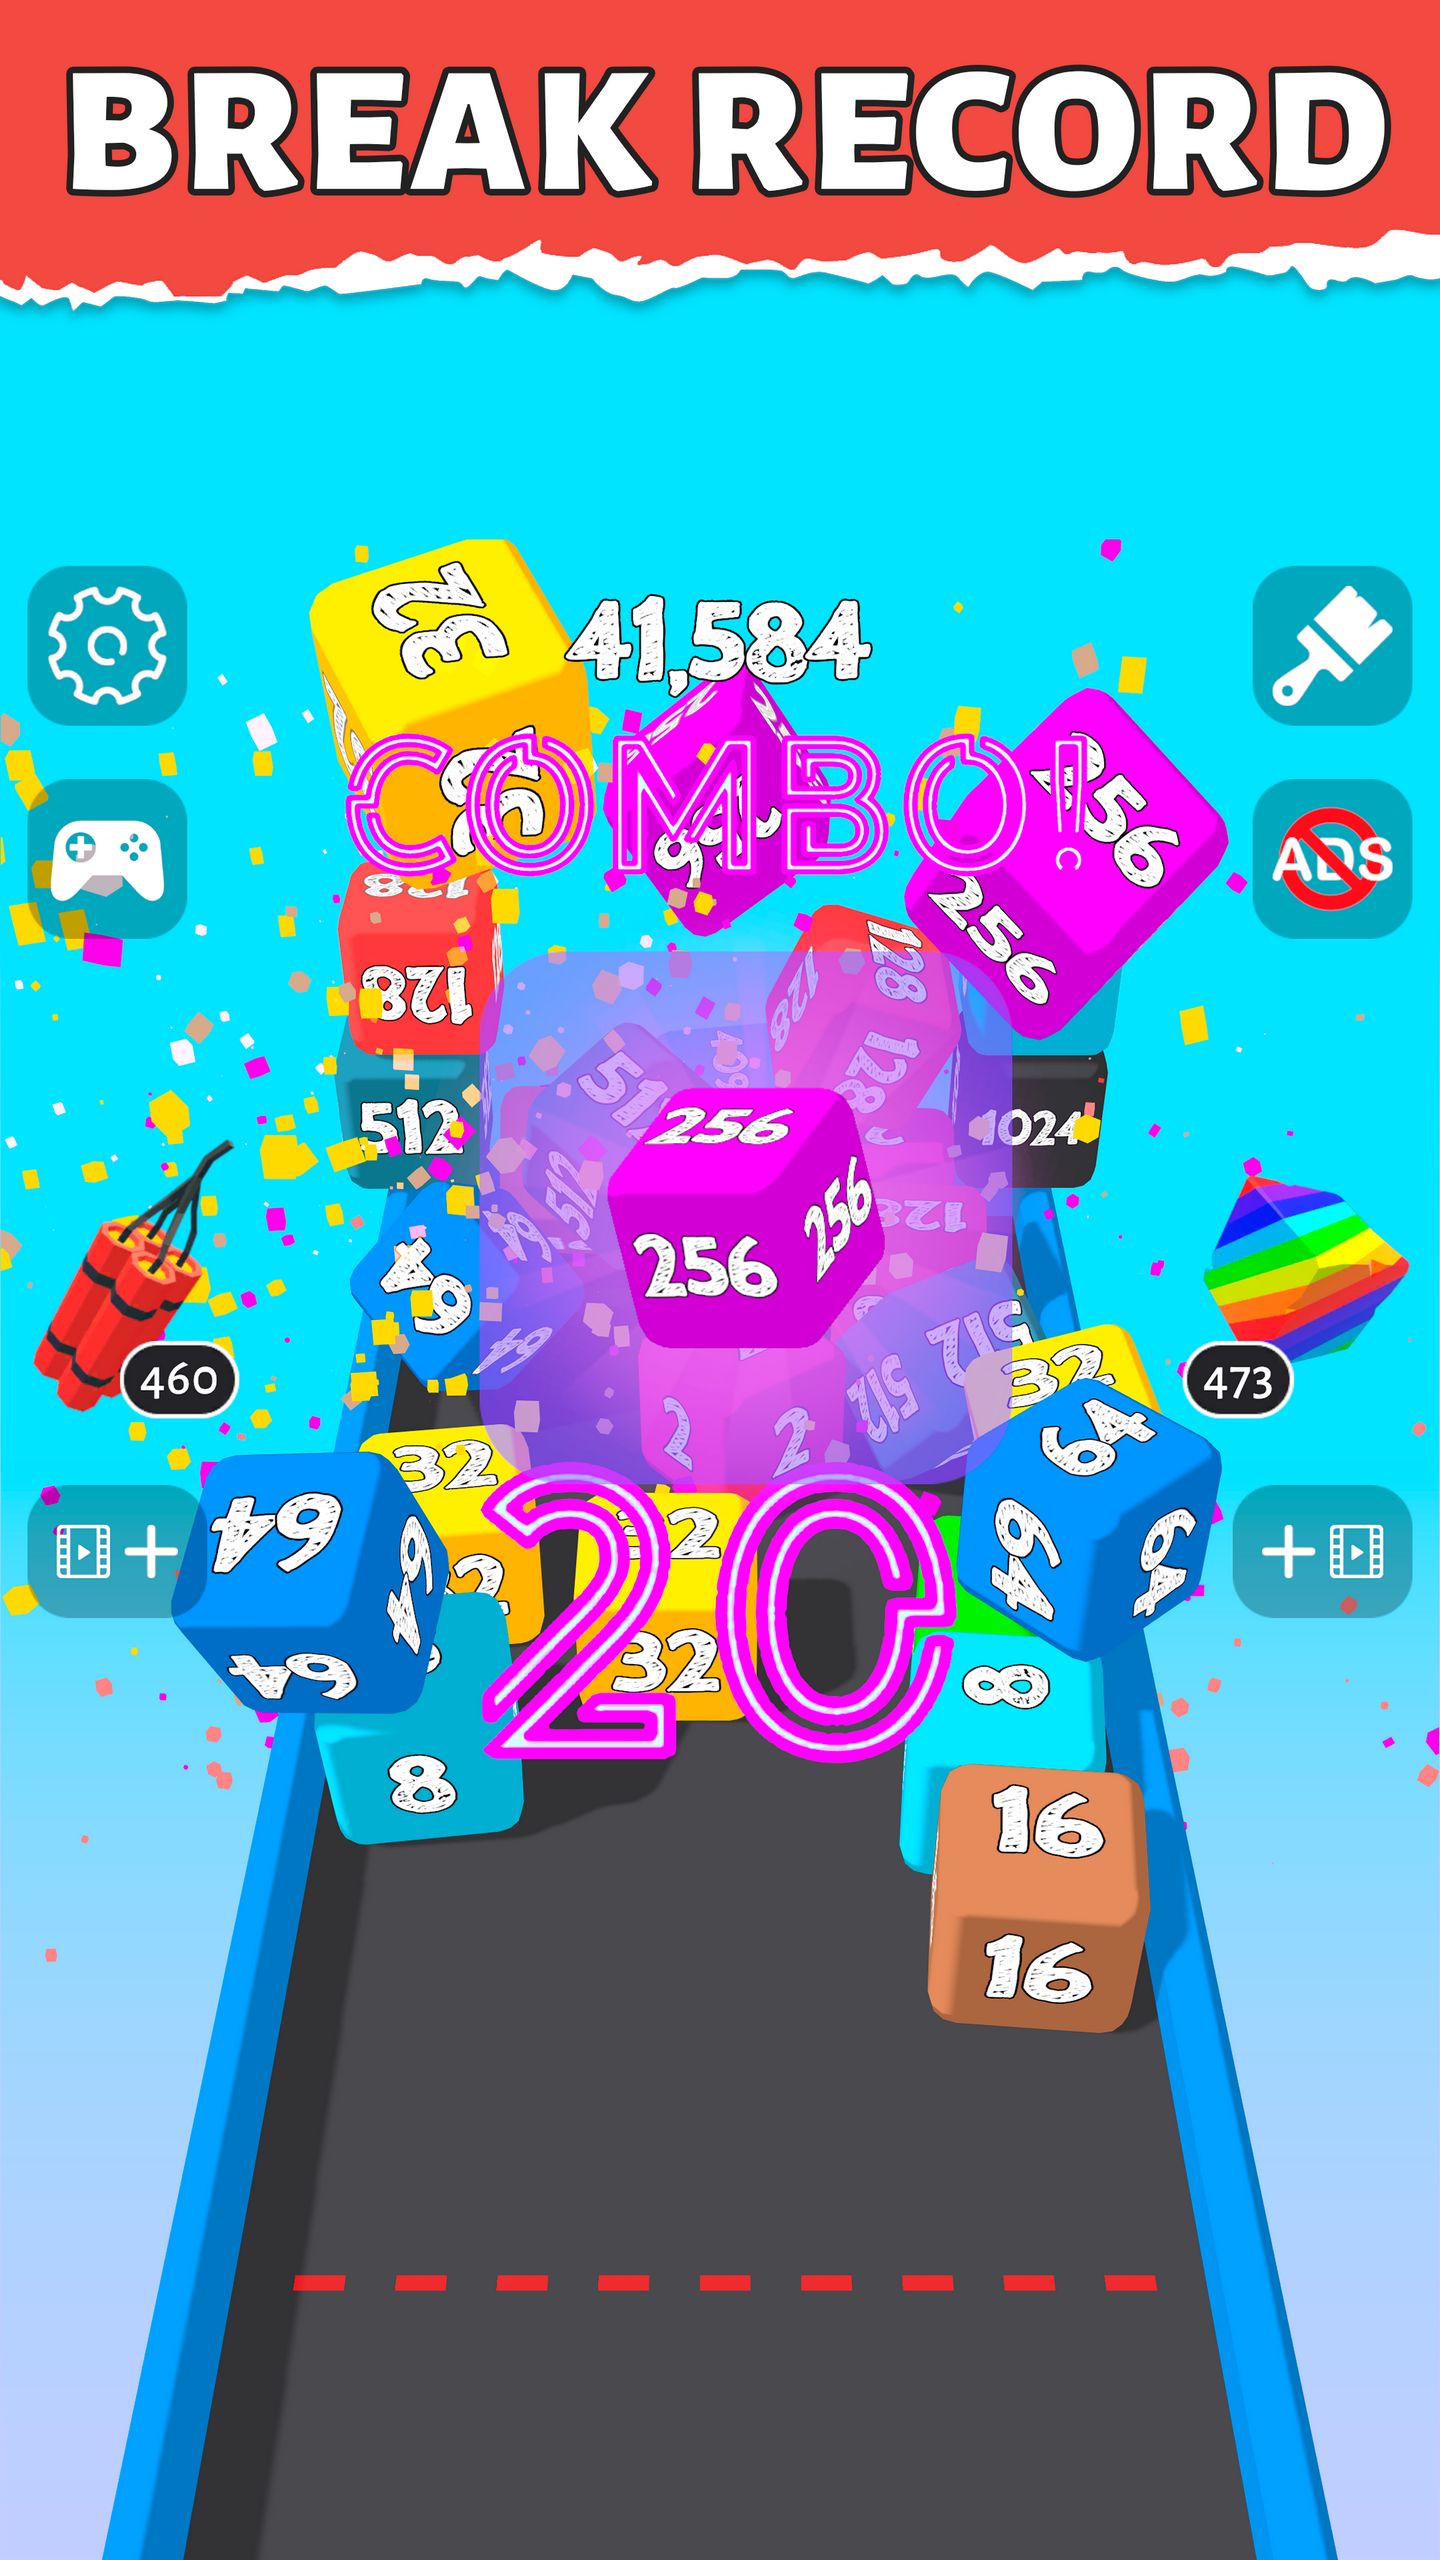 Dices 2048 3D 🕹️ Jogue no CrazyGames